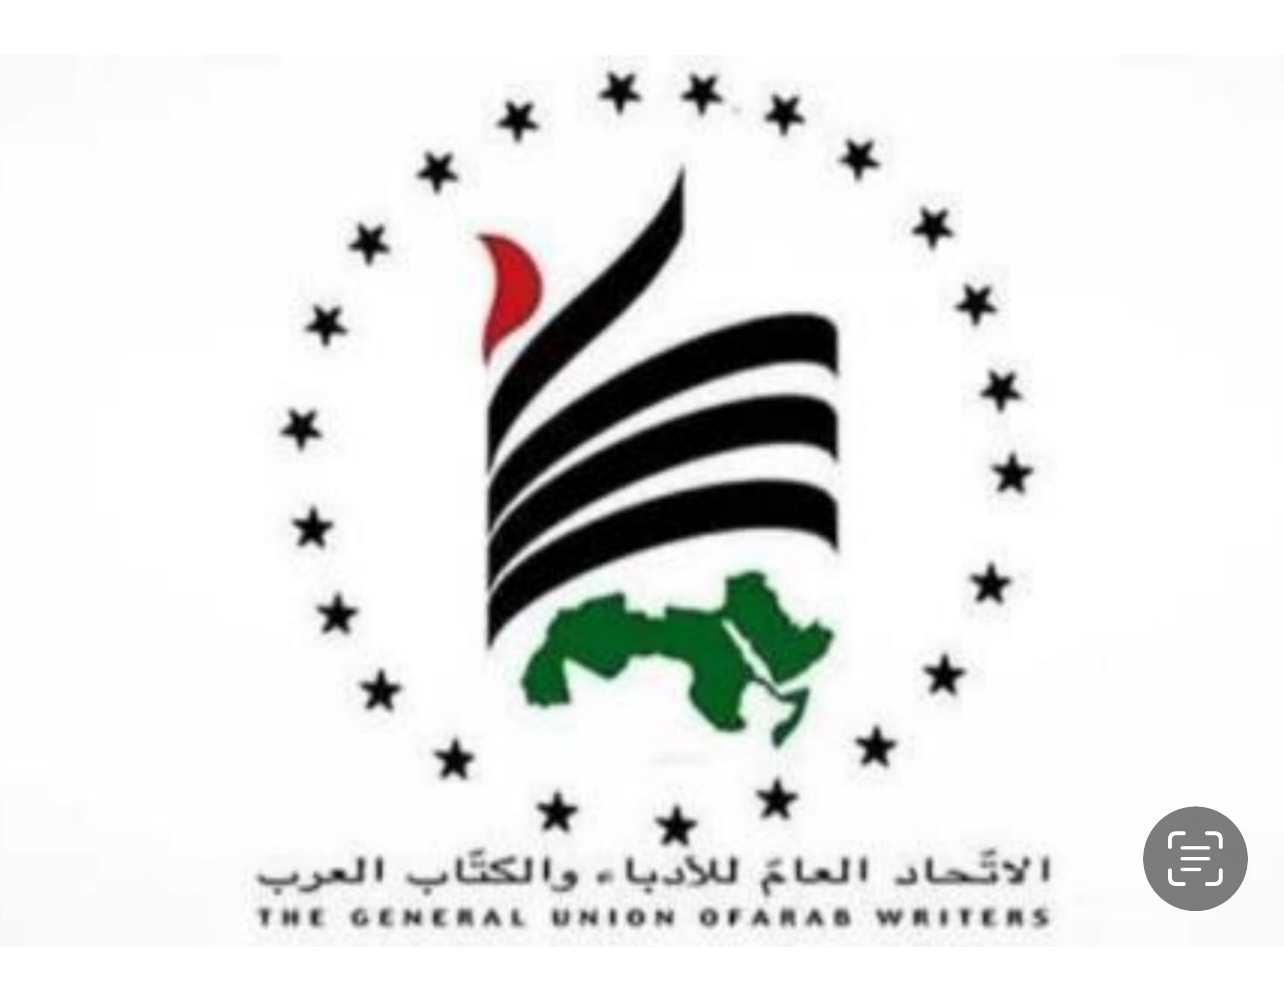 شعار الاتحاد العام للادباء والكتاب العرب